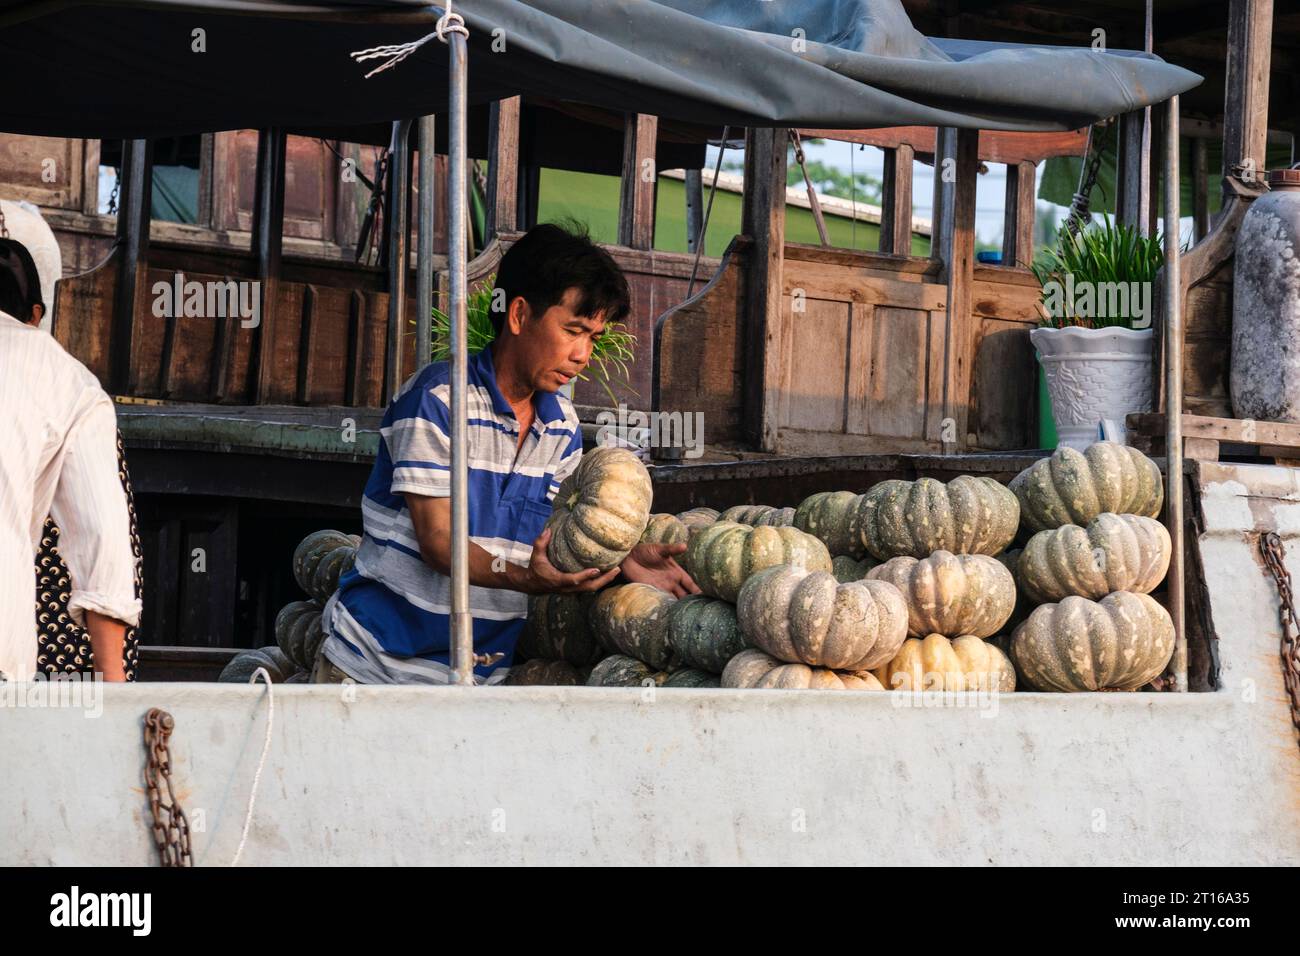 Scène du marché flottant de Phong Dien, près de CAN Tho, Vietnam. Fournisseur de squash. Banque D'Images